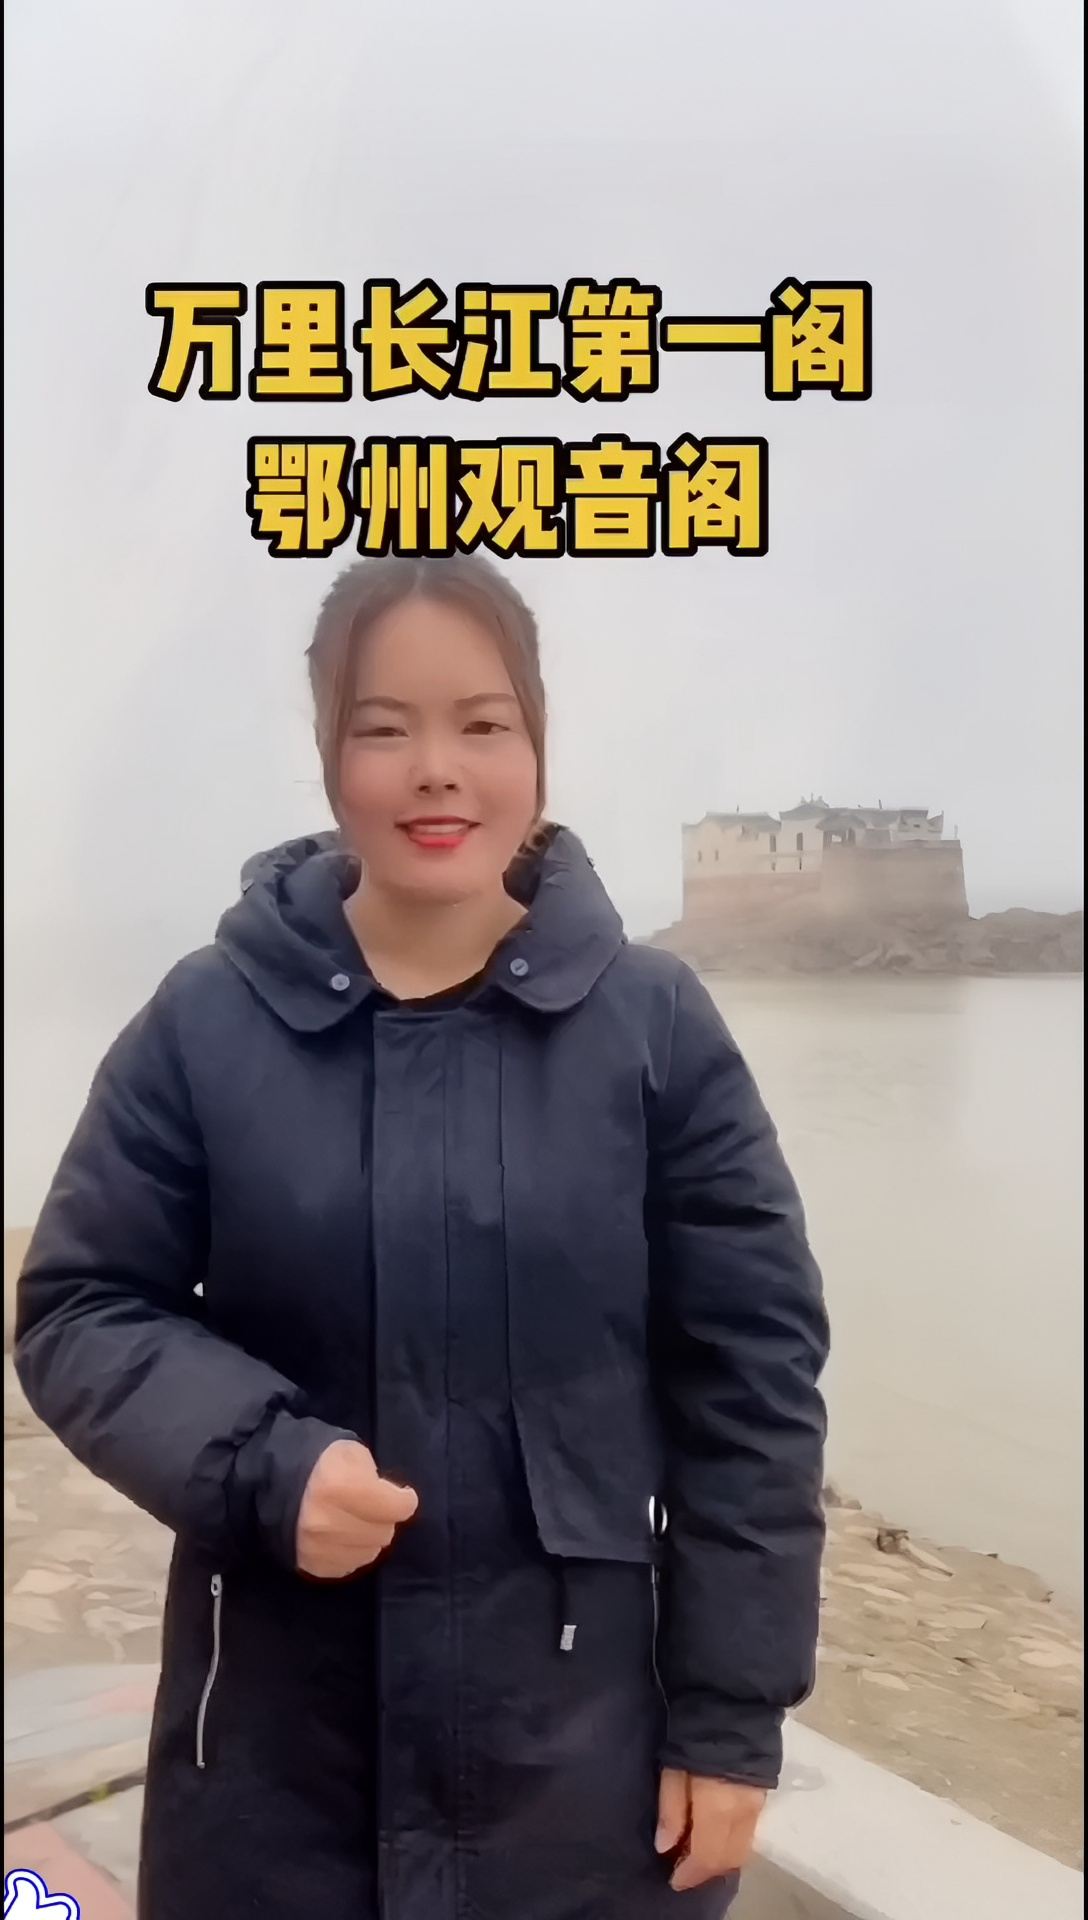 一栋长江中心的建筑任凭江水冲刷700年都屹立不倒，这究竟是为何？#湖北旅游 #观音阁